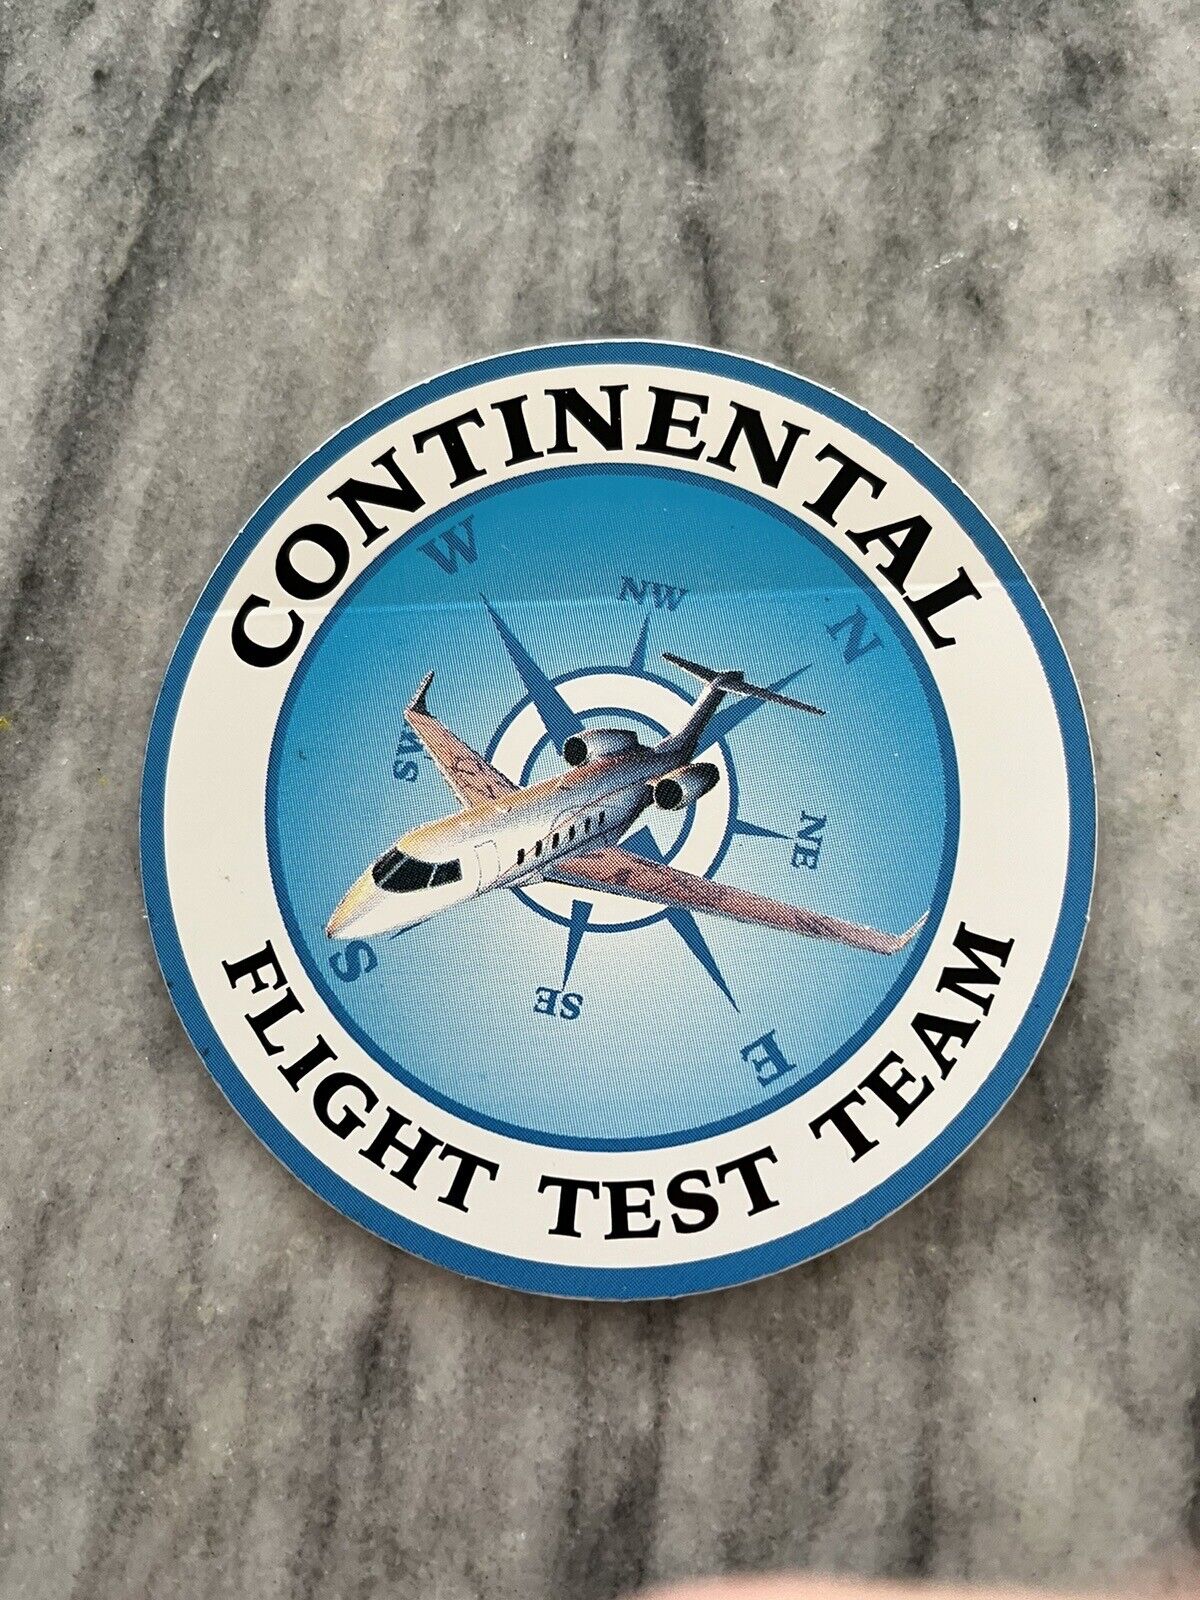 Vintage Bombardier Flight Test Team Continental Challenger Sticker - 